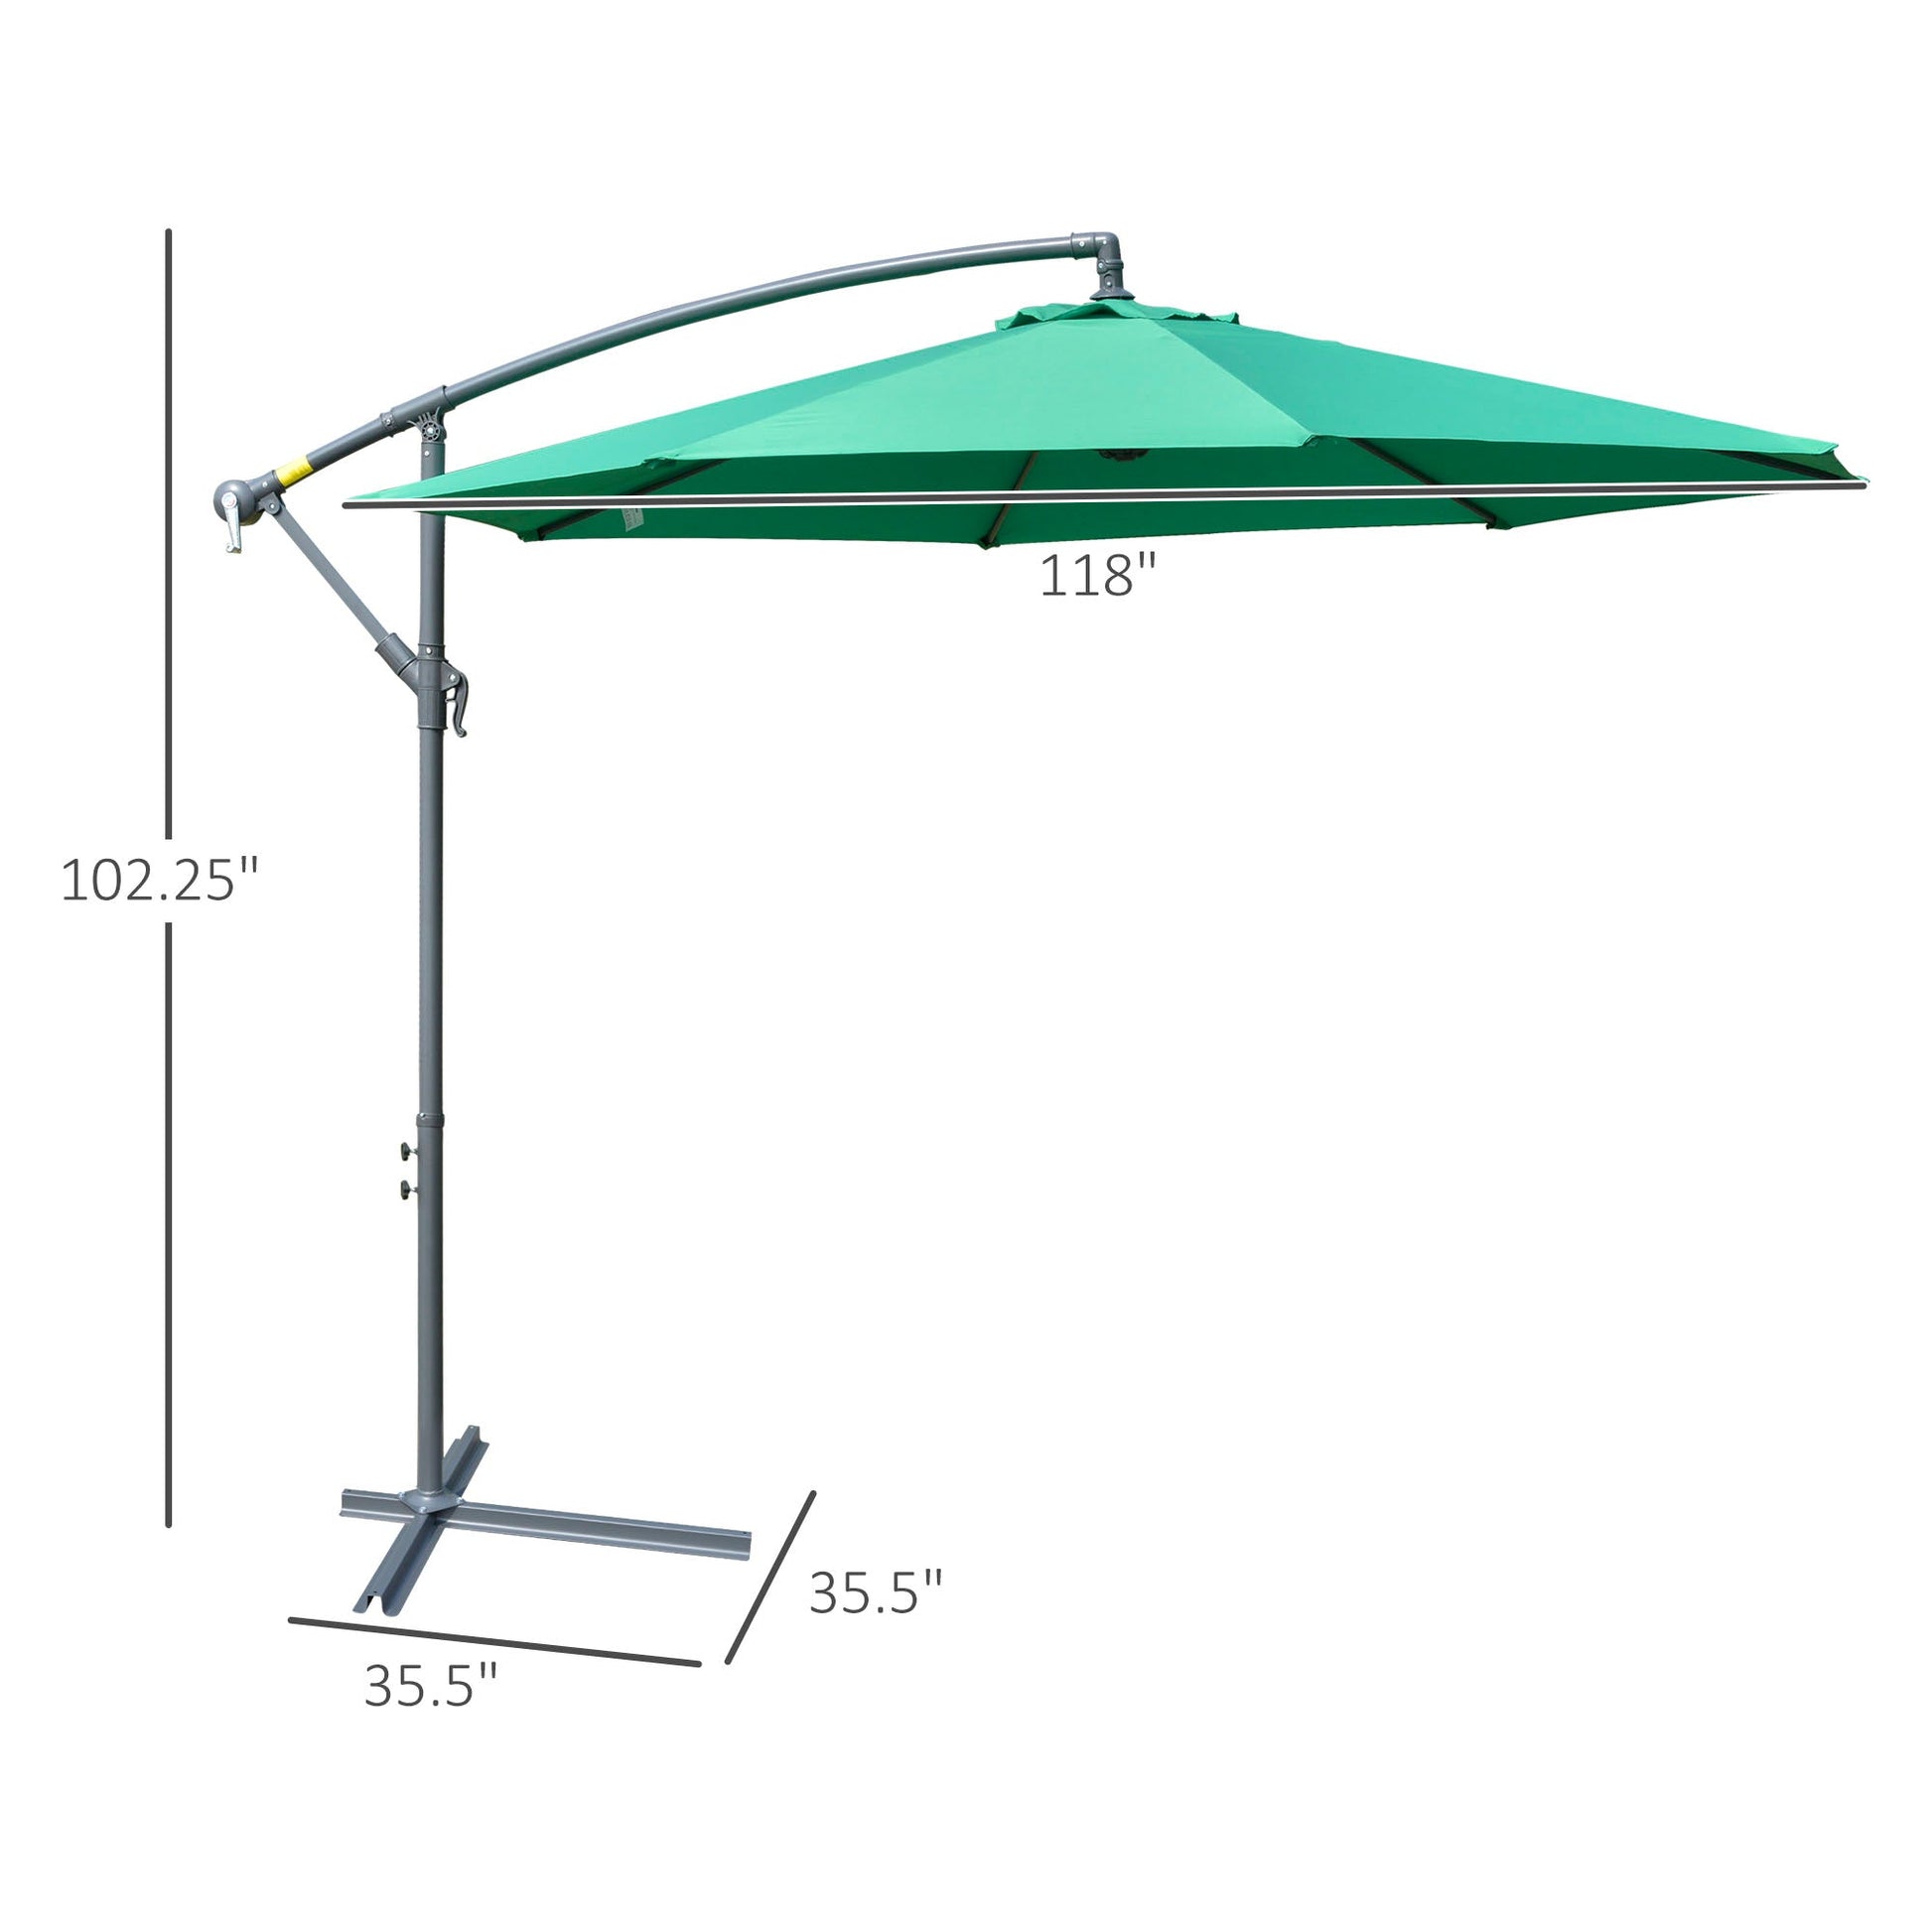 10ft Offset Patio Umbrella with Base, Garden Hanging Parasol with Crank, Banana Cantilever Umbrella Sun Shade, Green at Gallery Canada